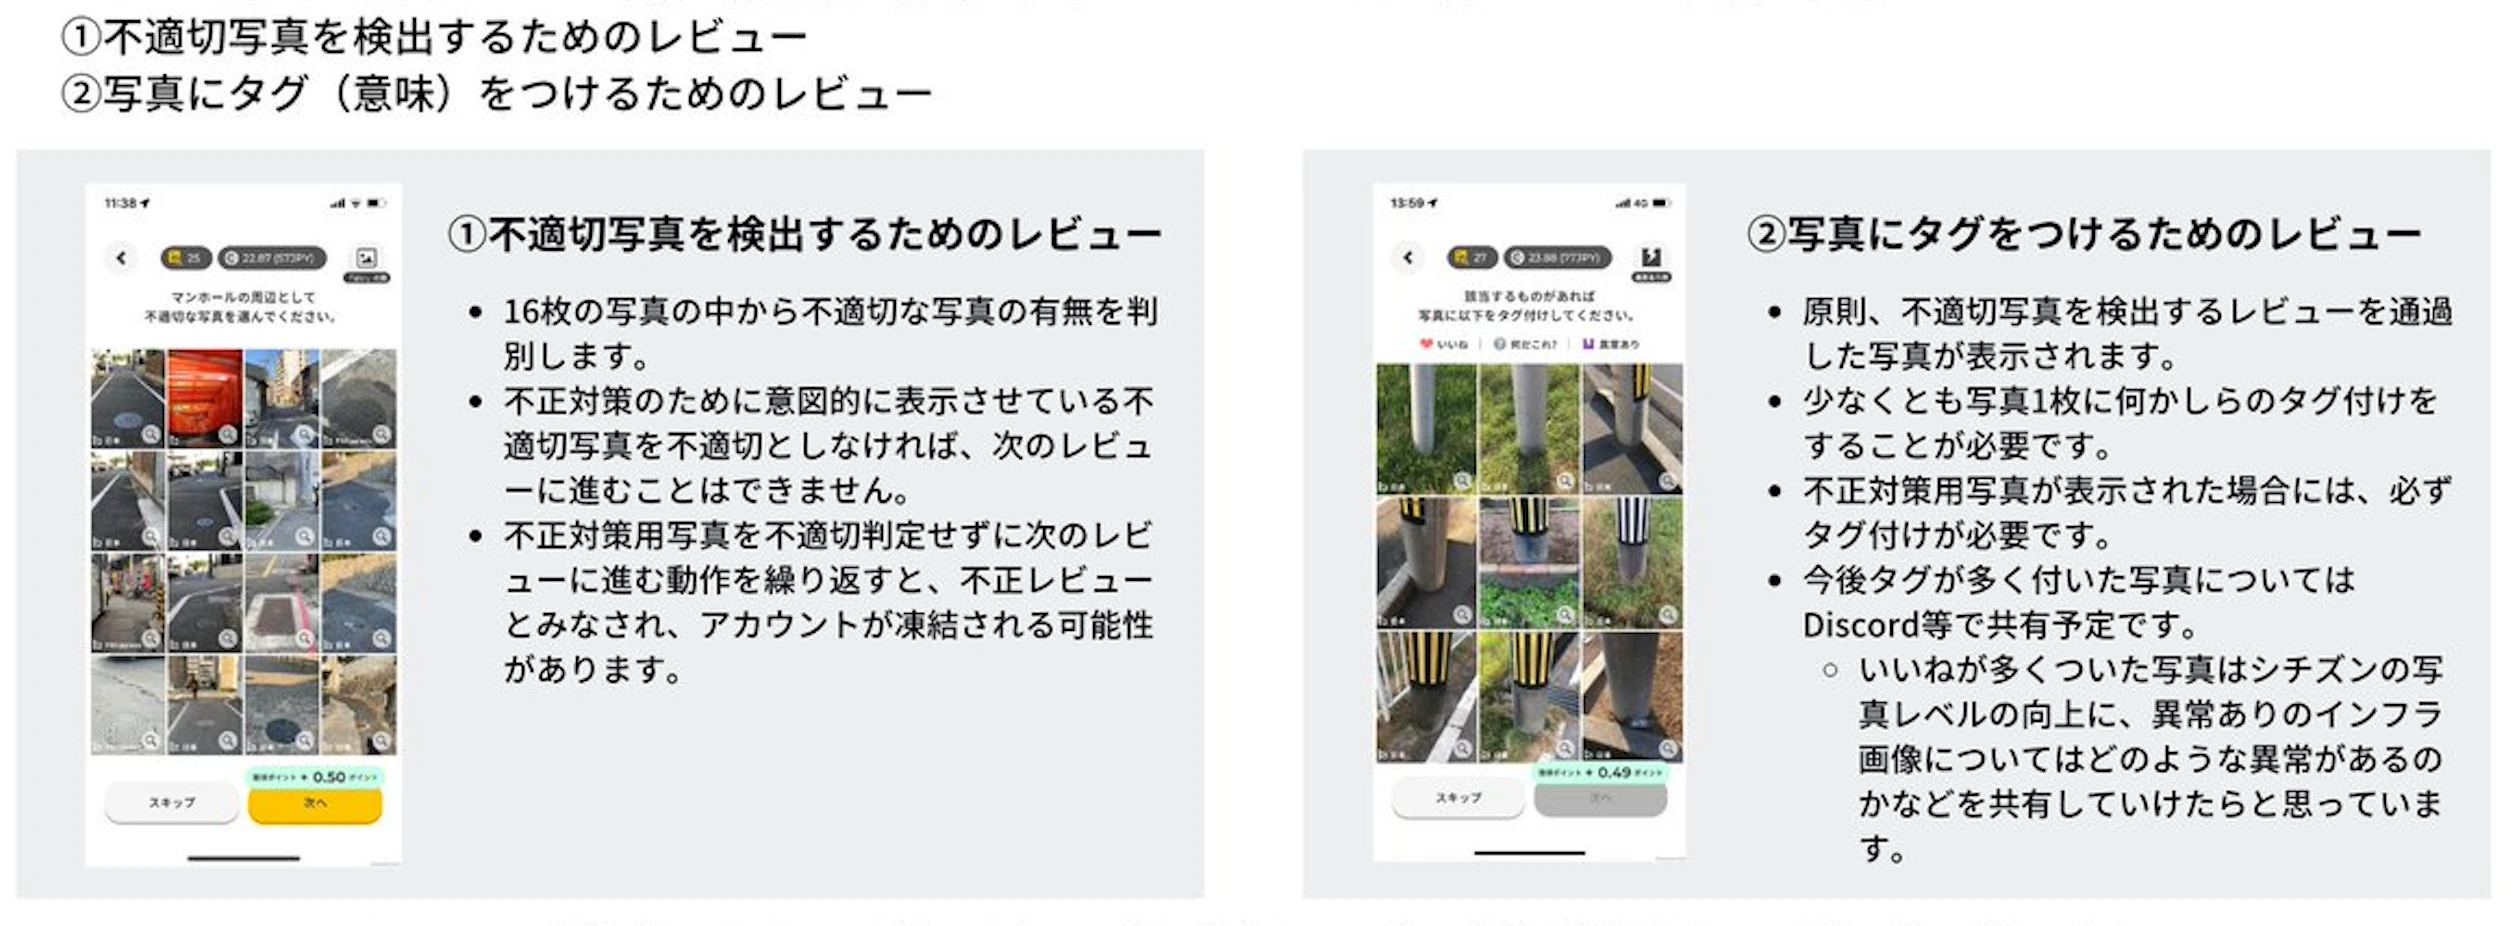 万人扫街拍照、BBC报道，风靡日本的Web3产品TEKKON是什么？